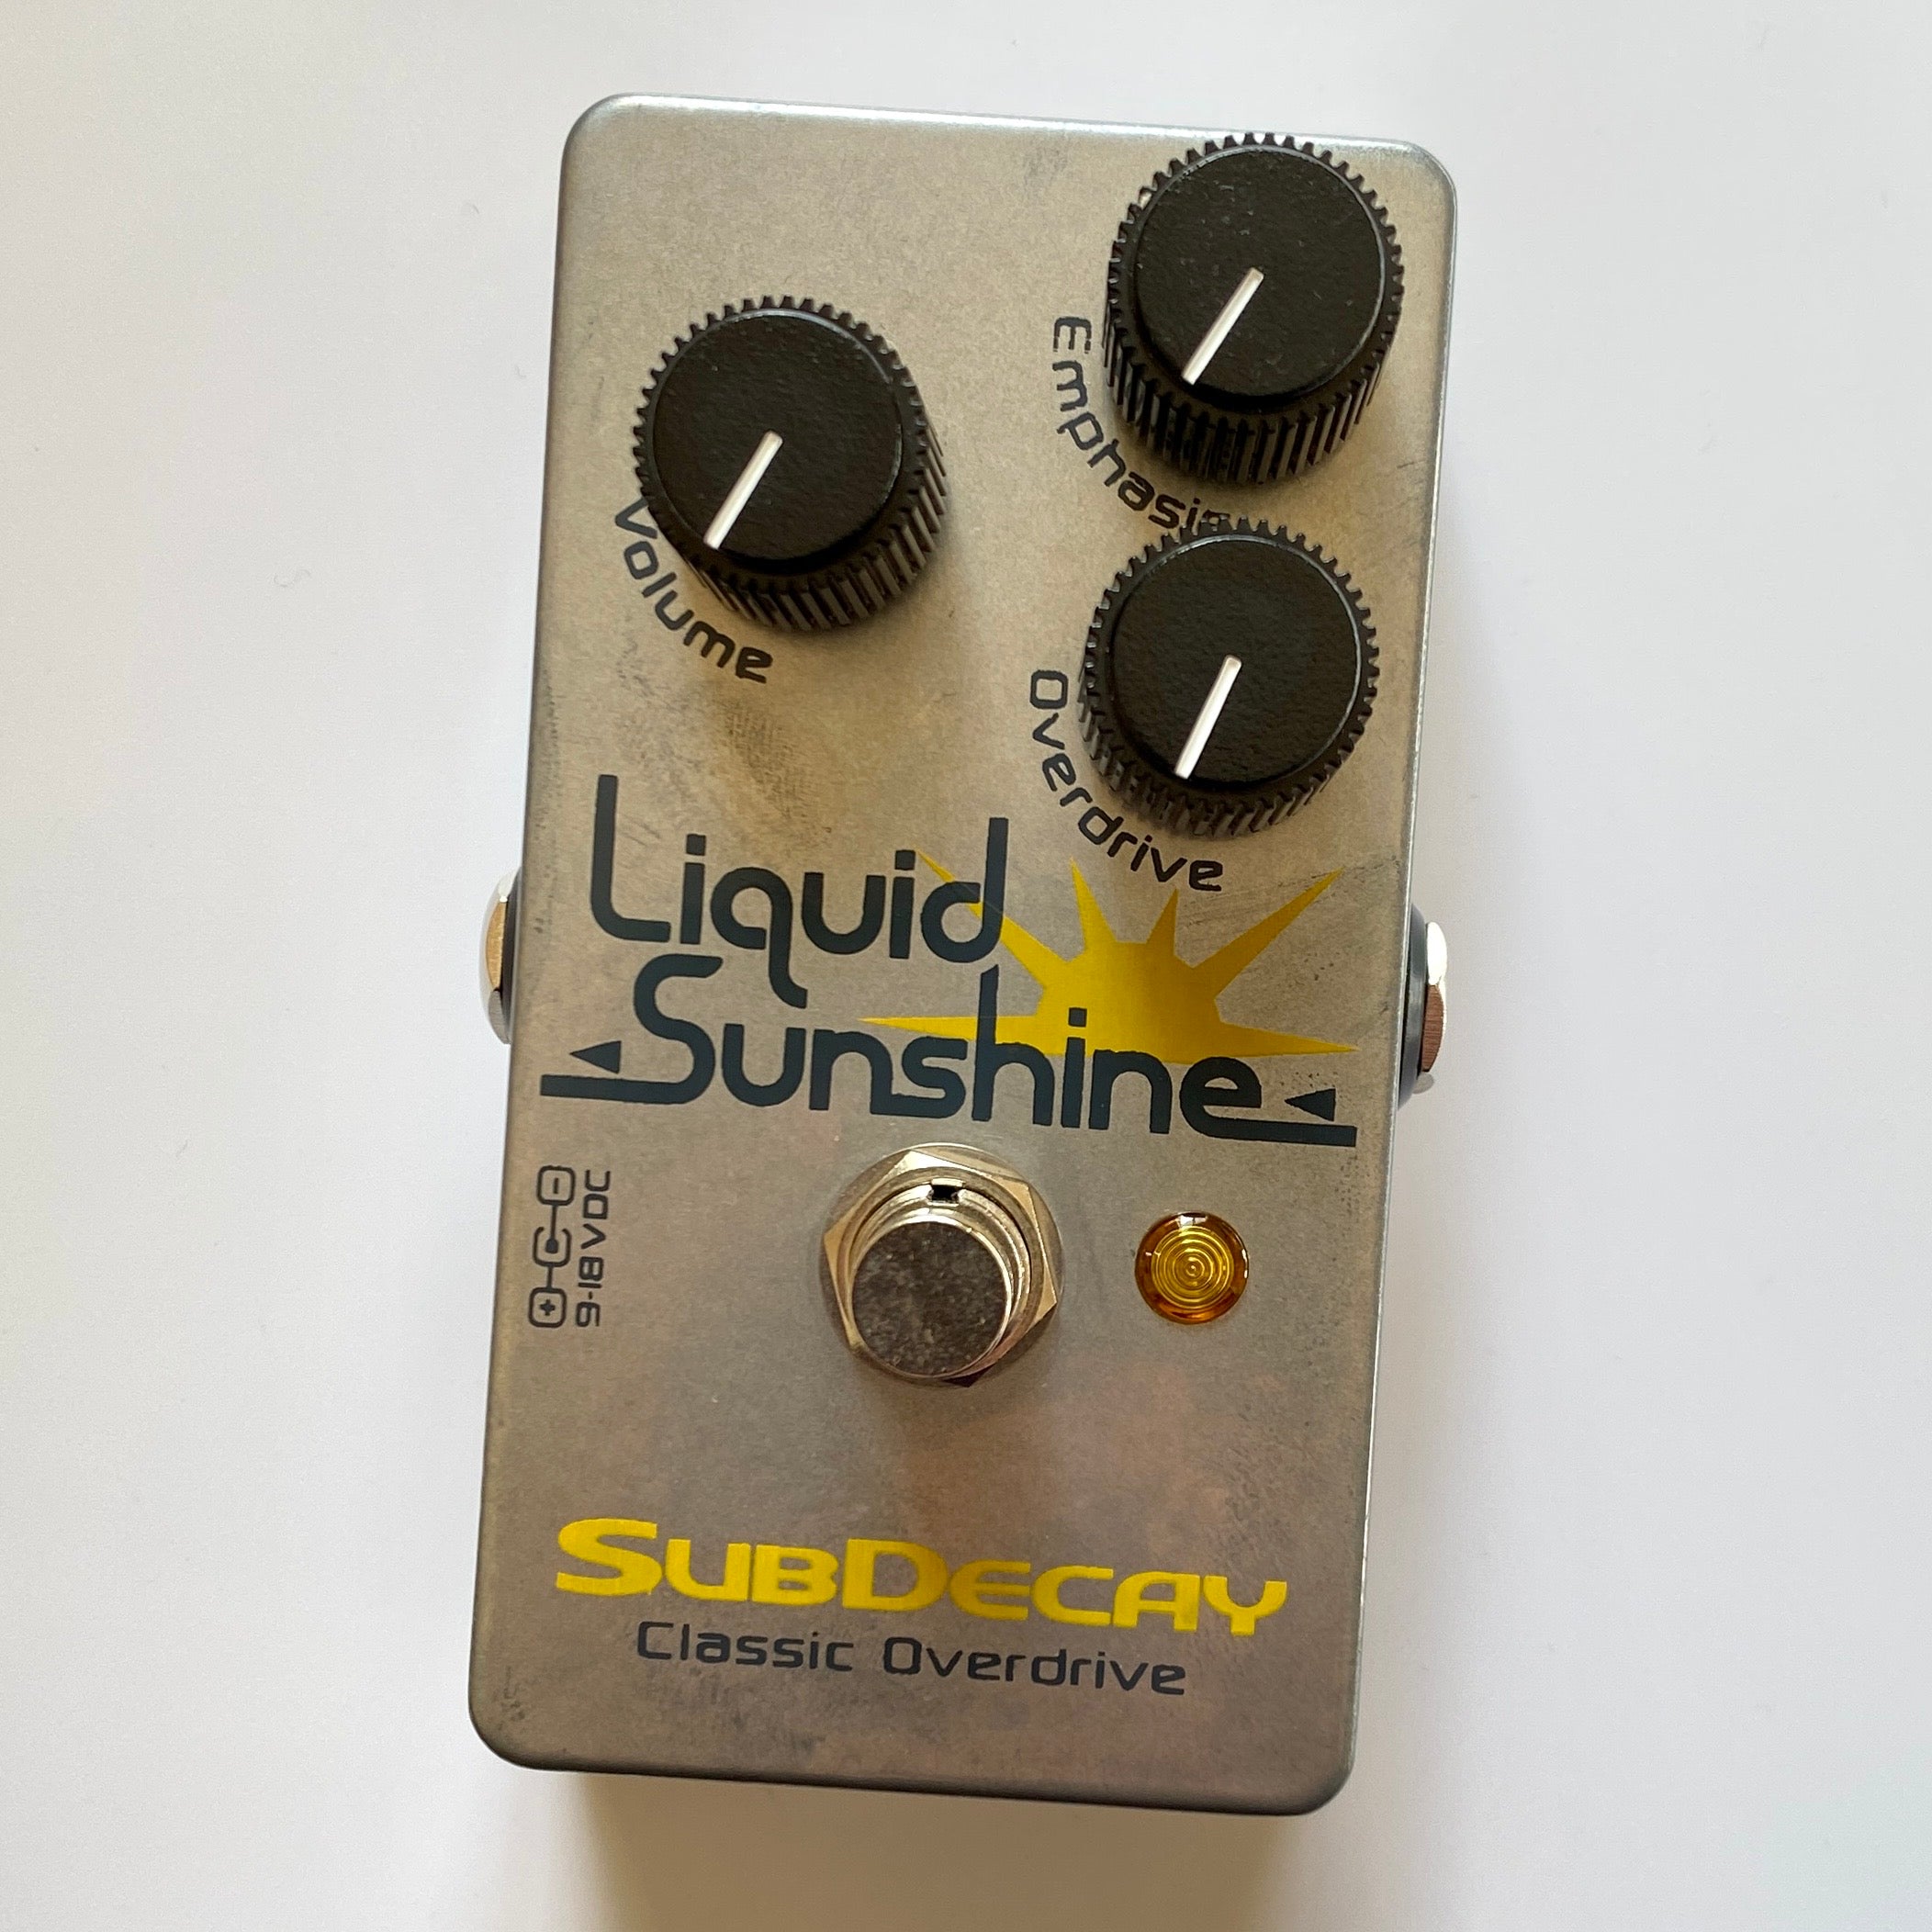 Subdecay Liquid Sunshine オーバードライブ ブースター - ギター